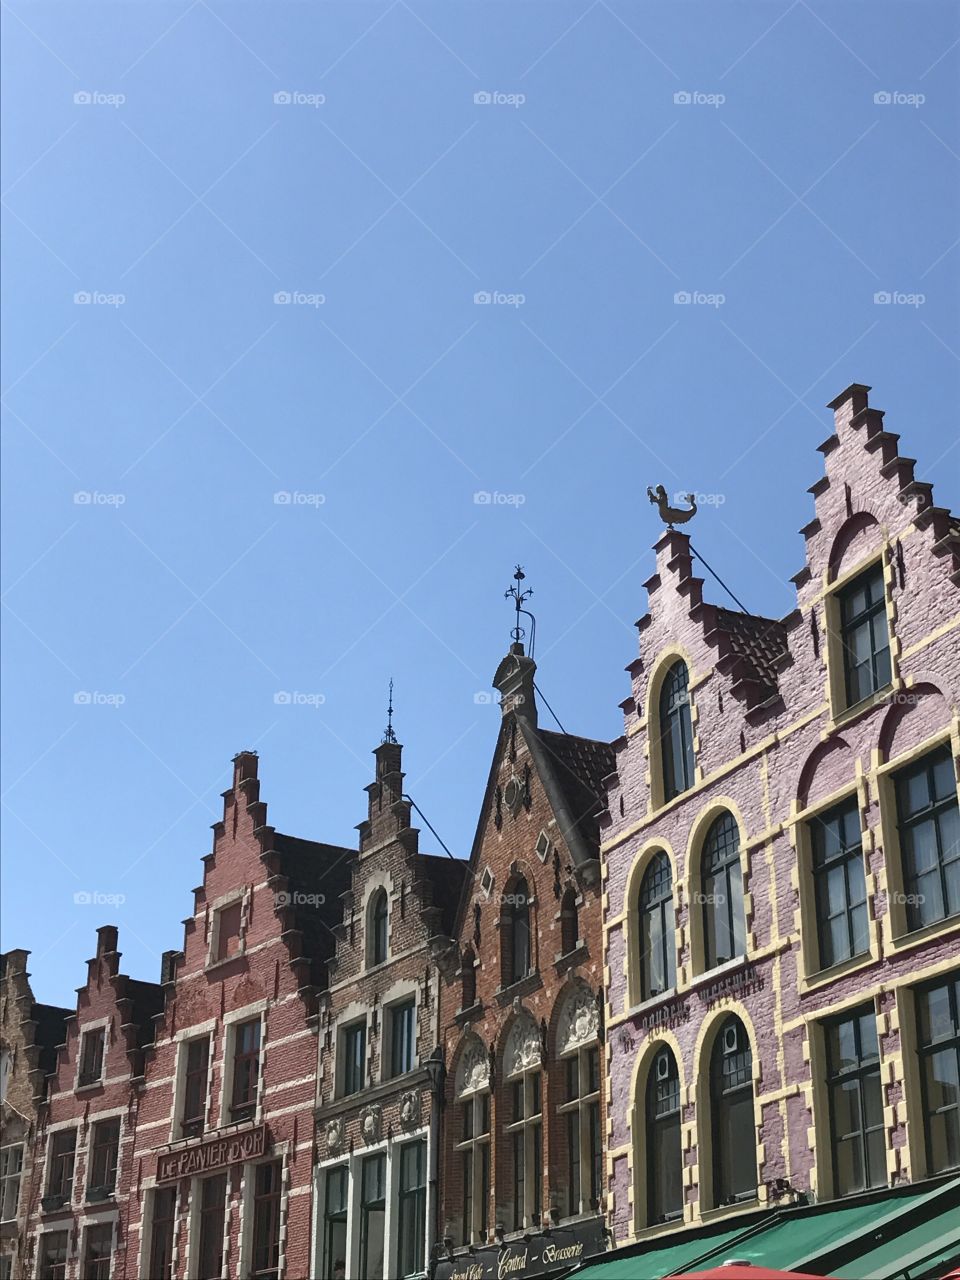 Building awnings in Brugge, Belgium